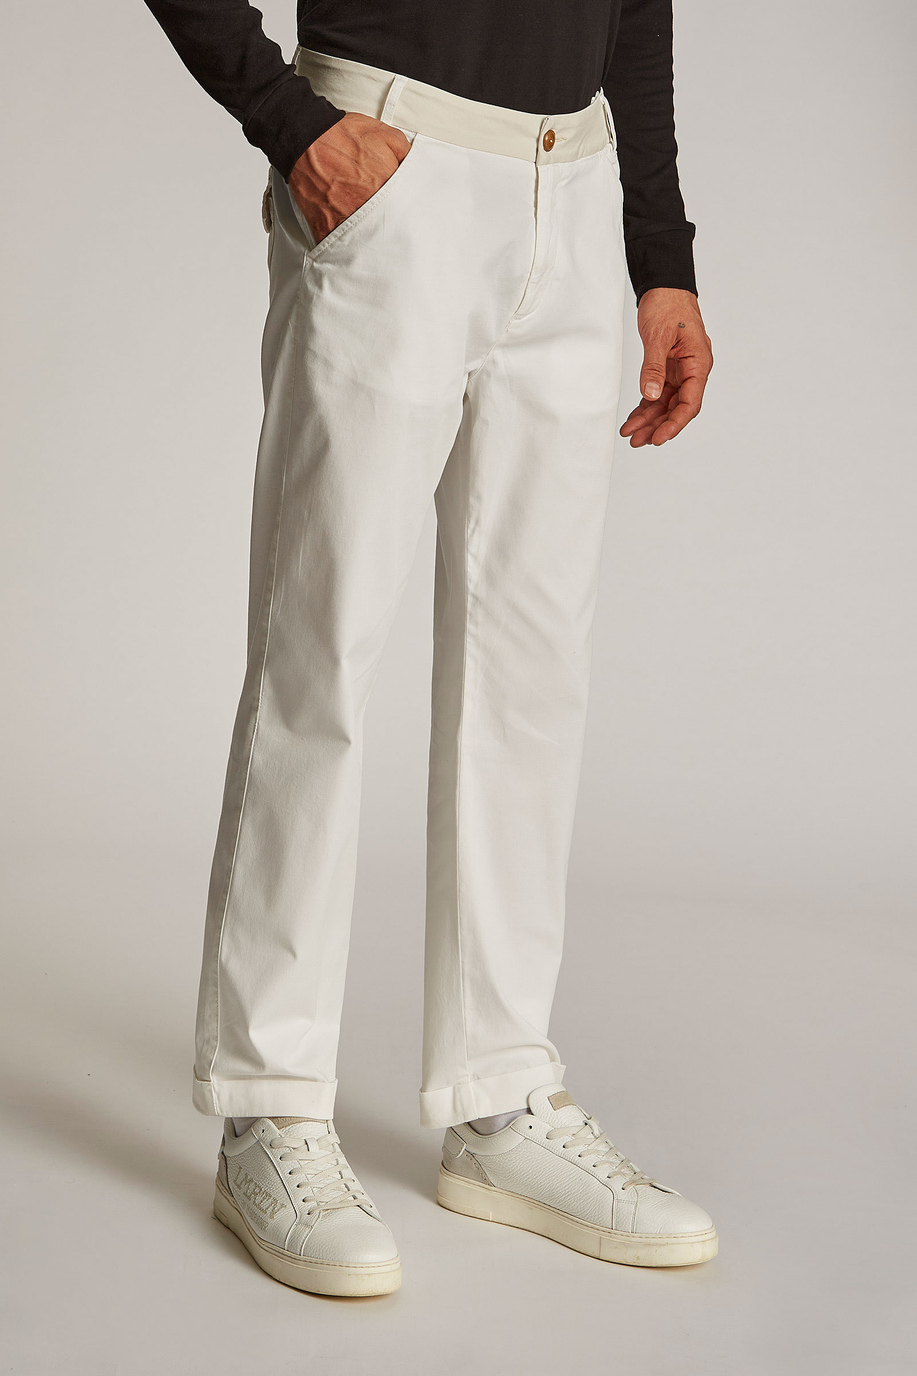 Pantalón de hombre de algodón mezcla de lino, corte regular | La Martina - Official Online Shop